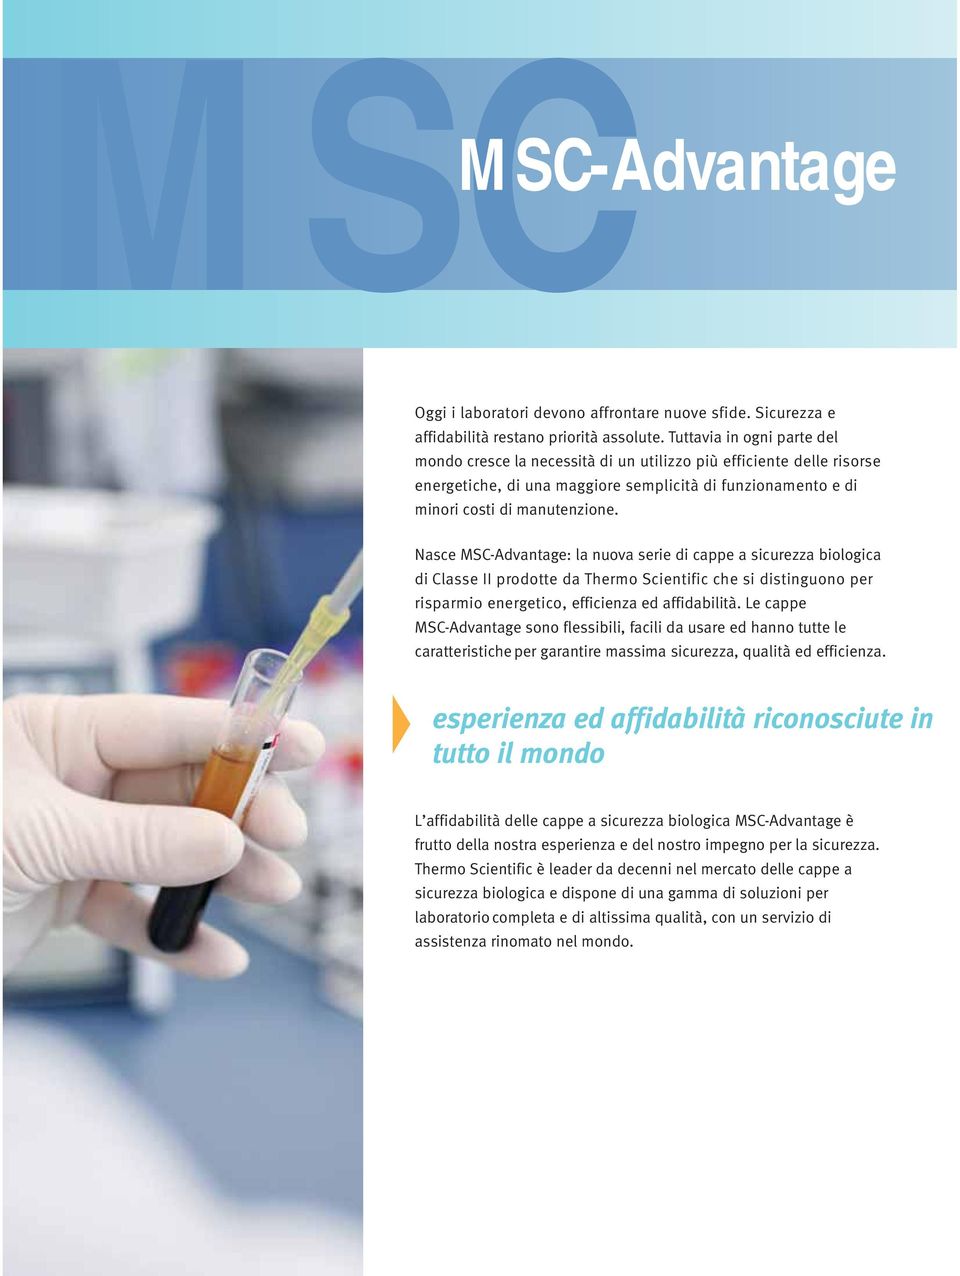 Nasce MSC-Advantage: la nuova serie di cappe a sicurezza biologica di Classe II prodotte da Thermo Scientific che si distinguono per risparmio energetico, efficienza ed affidabilità.